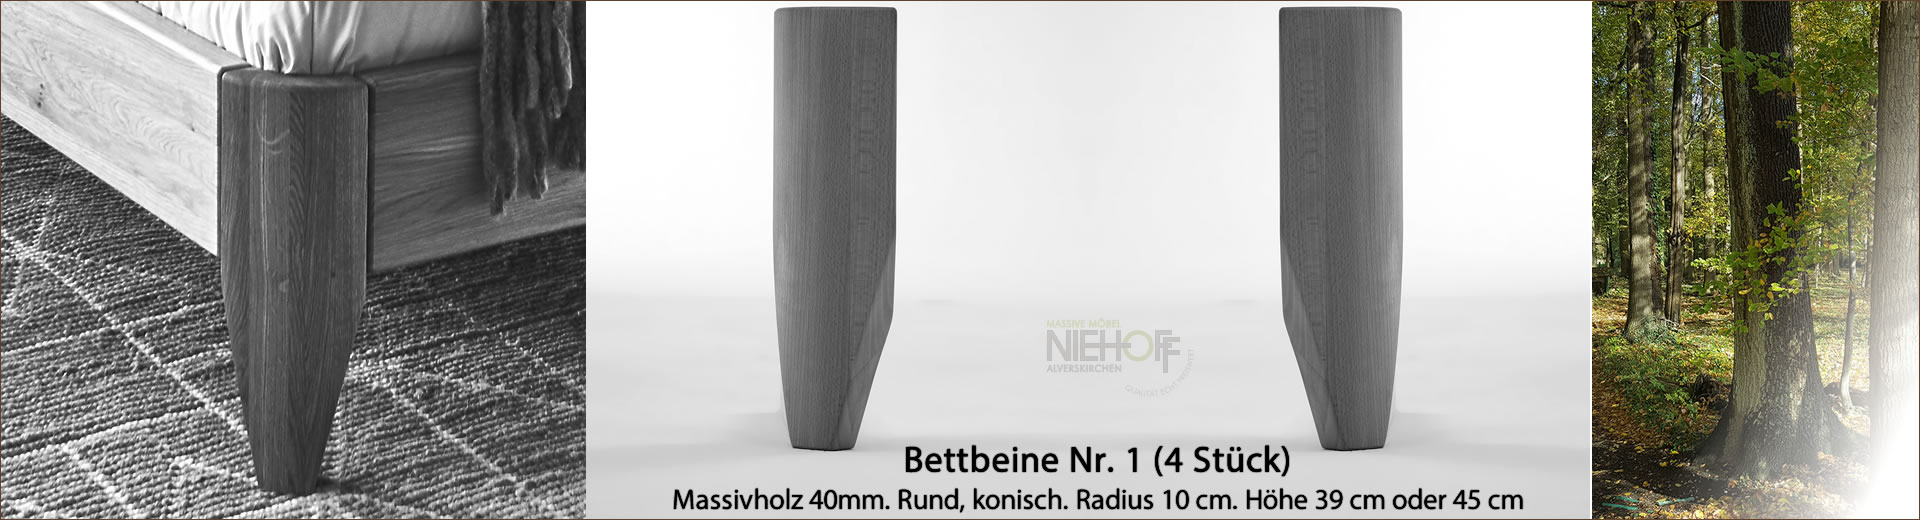 Bettbeine Nr. 1, Massivholz 40 mm rund, Radius 10 cm, konisch, Höhe 39 cm oder 45 cm